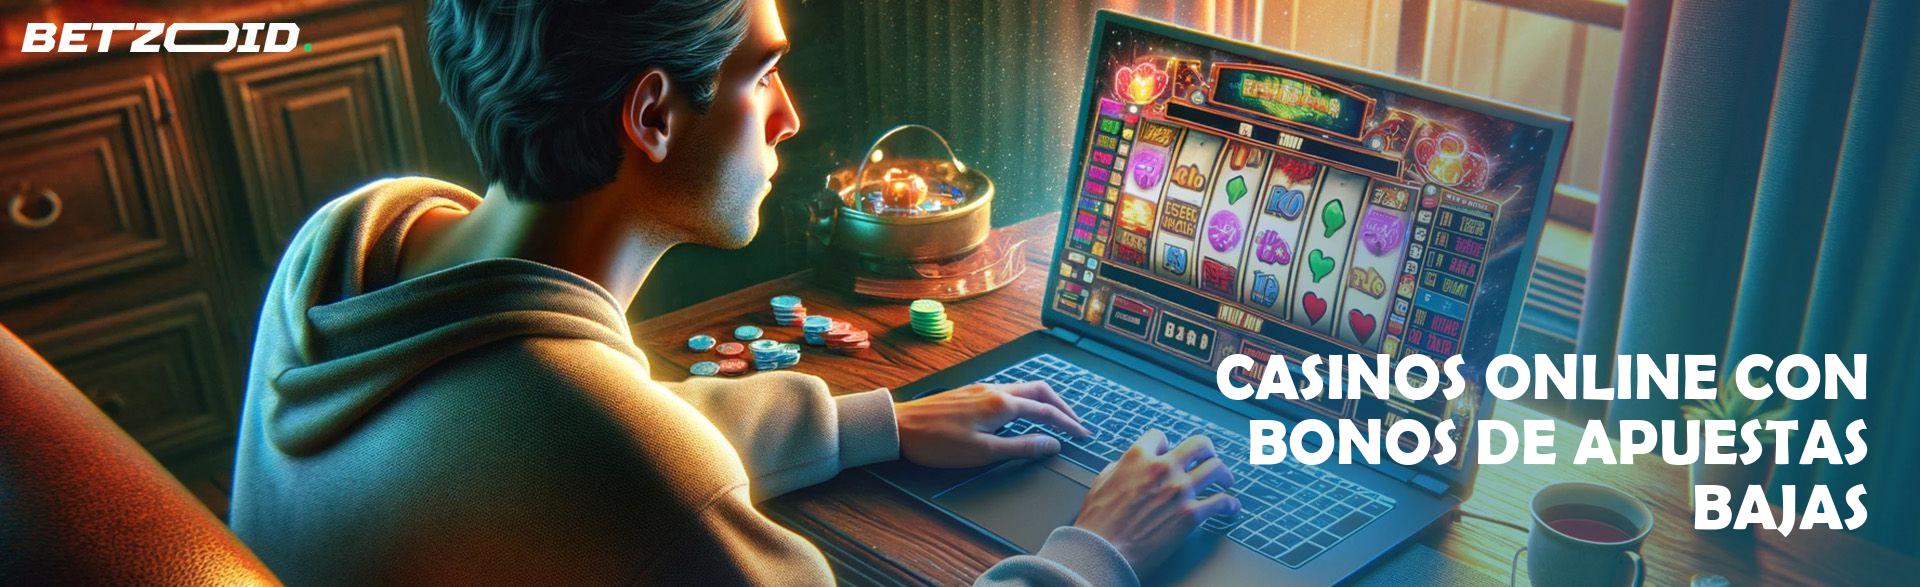 Casinos Online con Bonos de Apuestas Bajas.